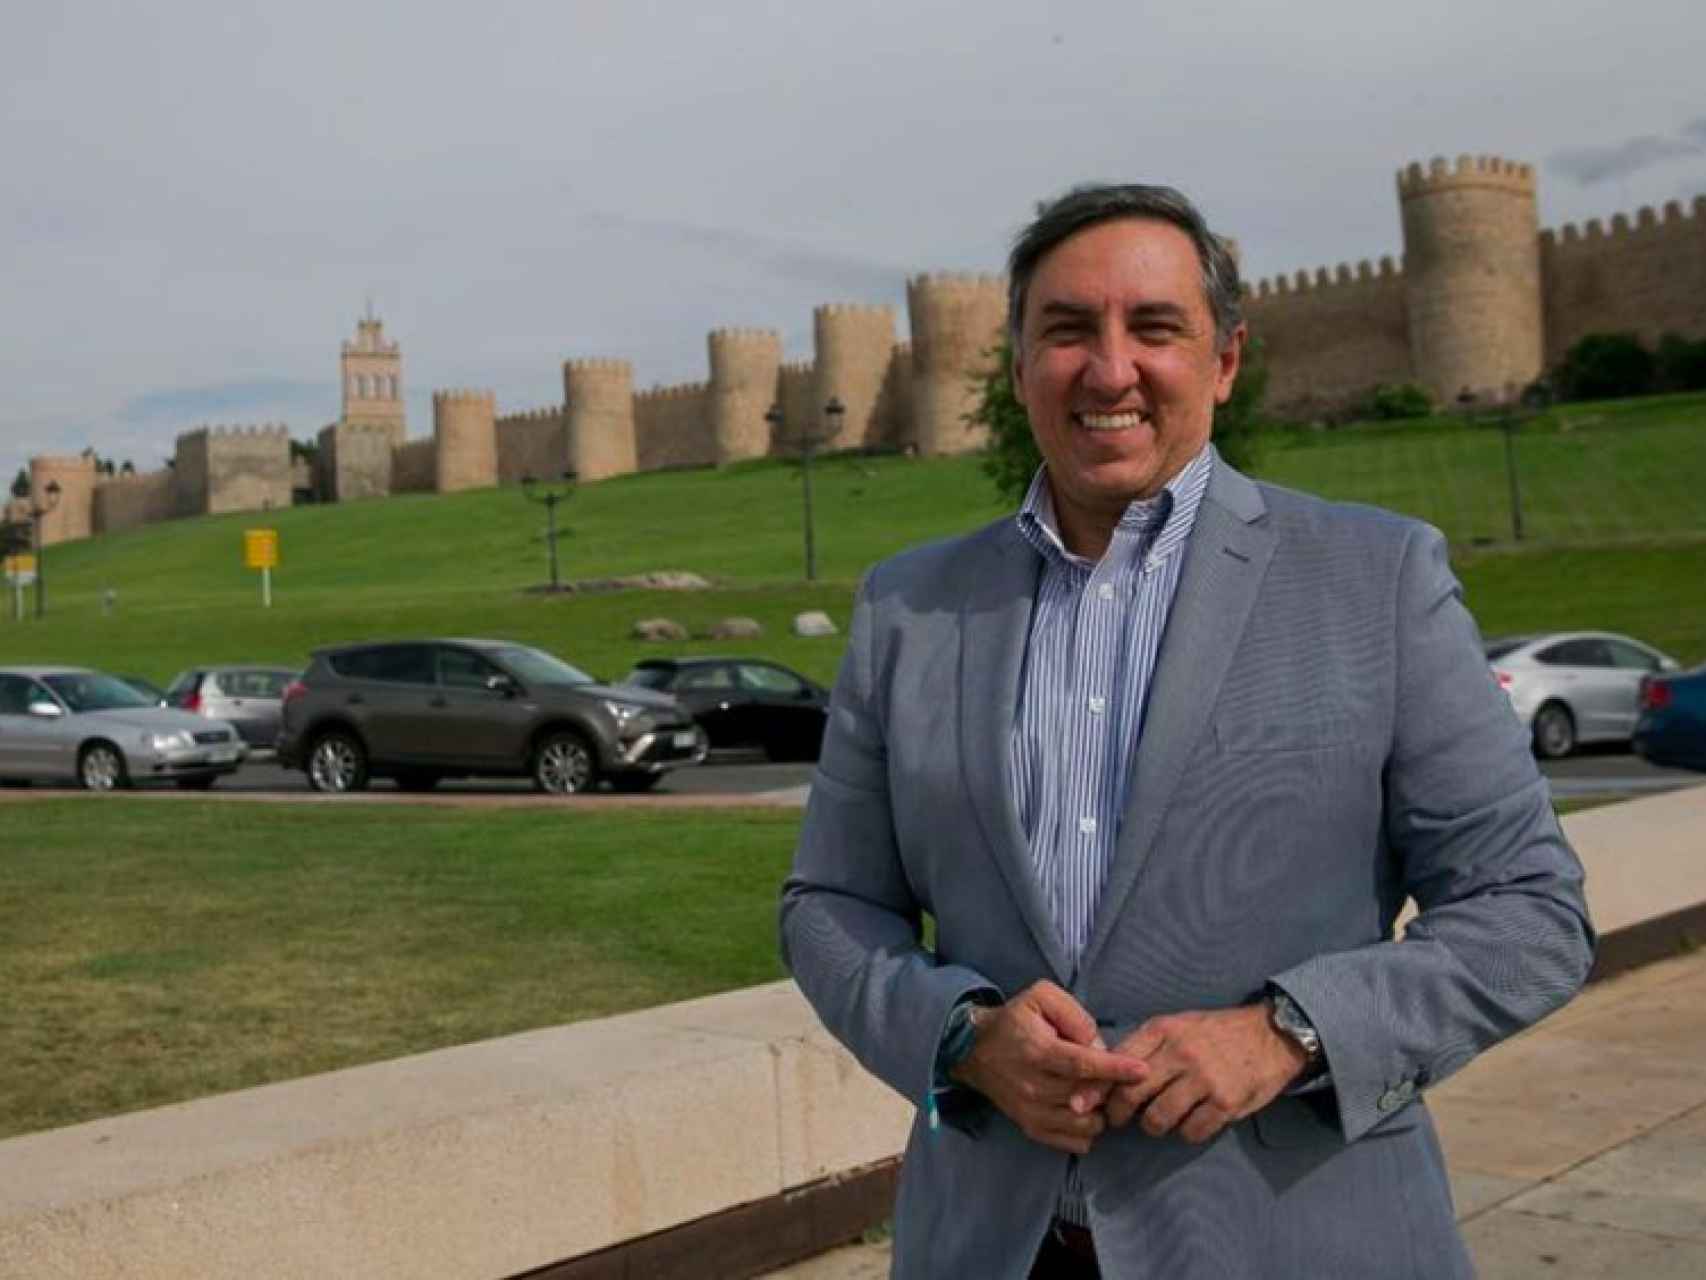 José Ramón García-Hernández, el candidato de la militancia, delante de la muralla de Ávila, su ciudad.